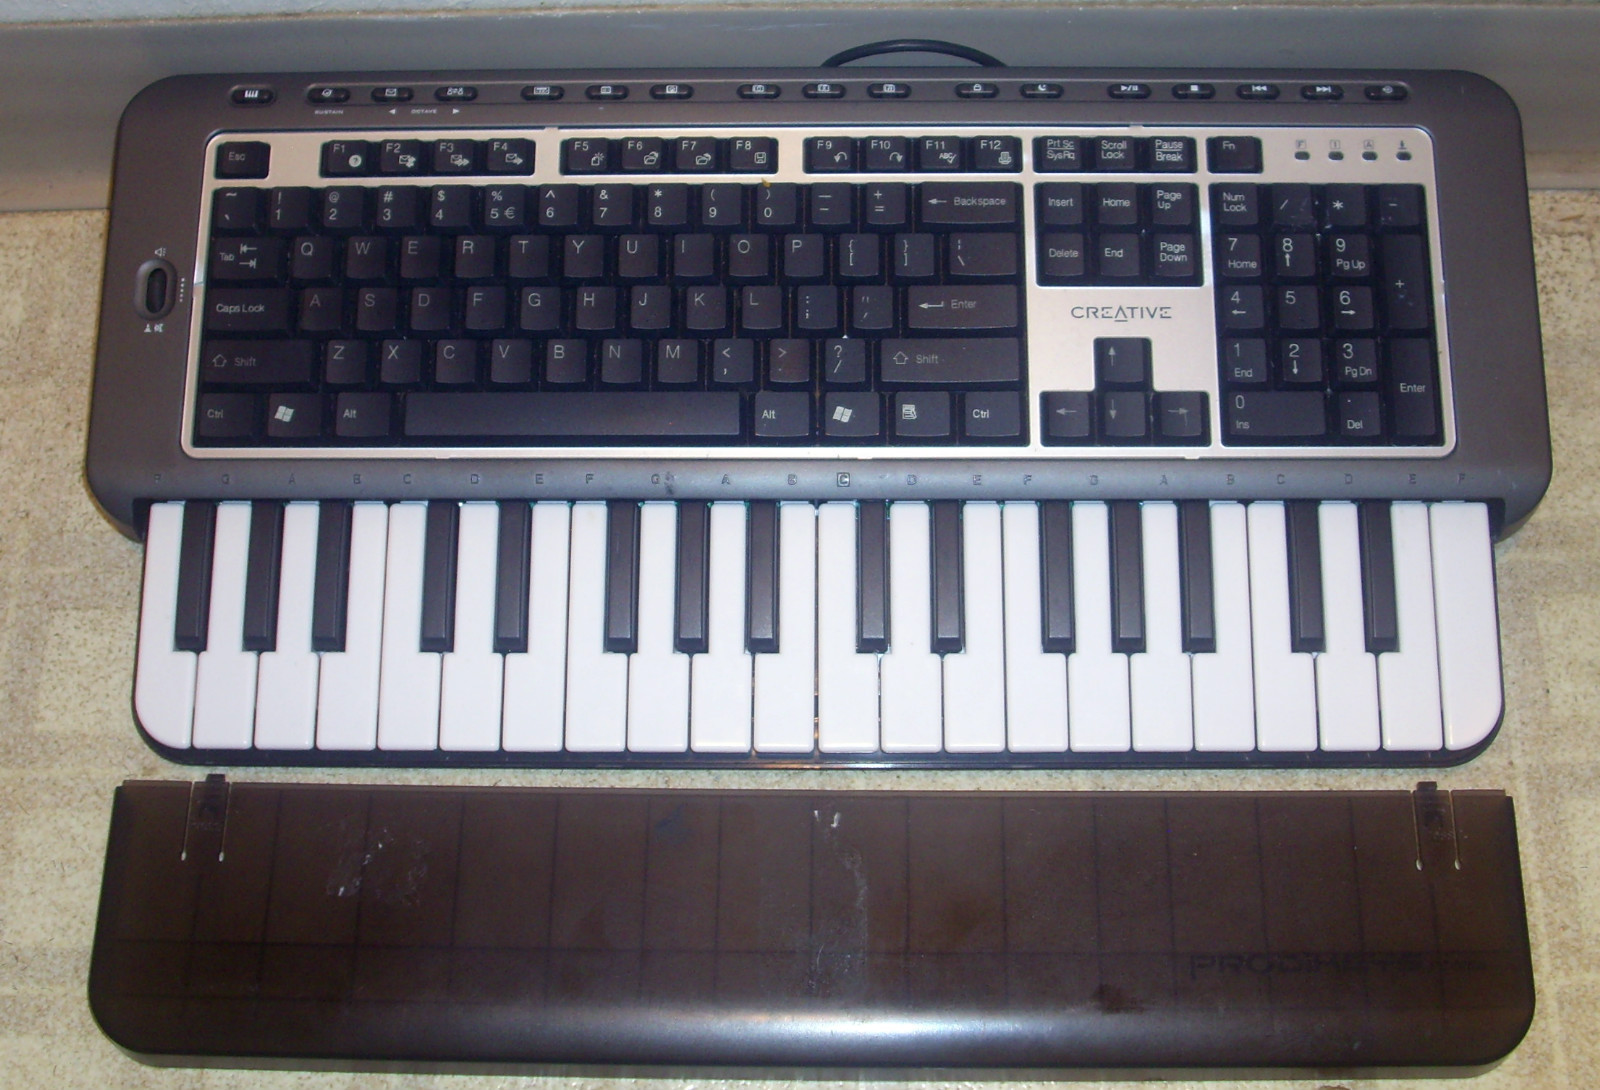 Midi keyboard for macbook